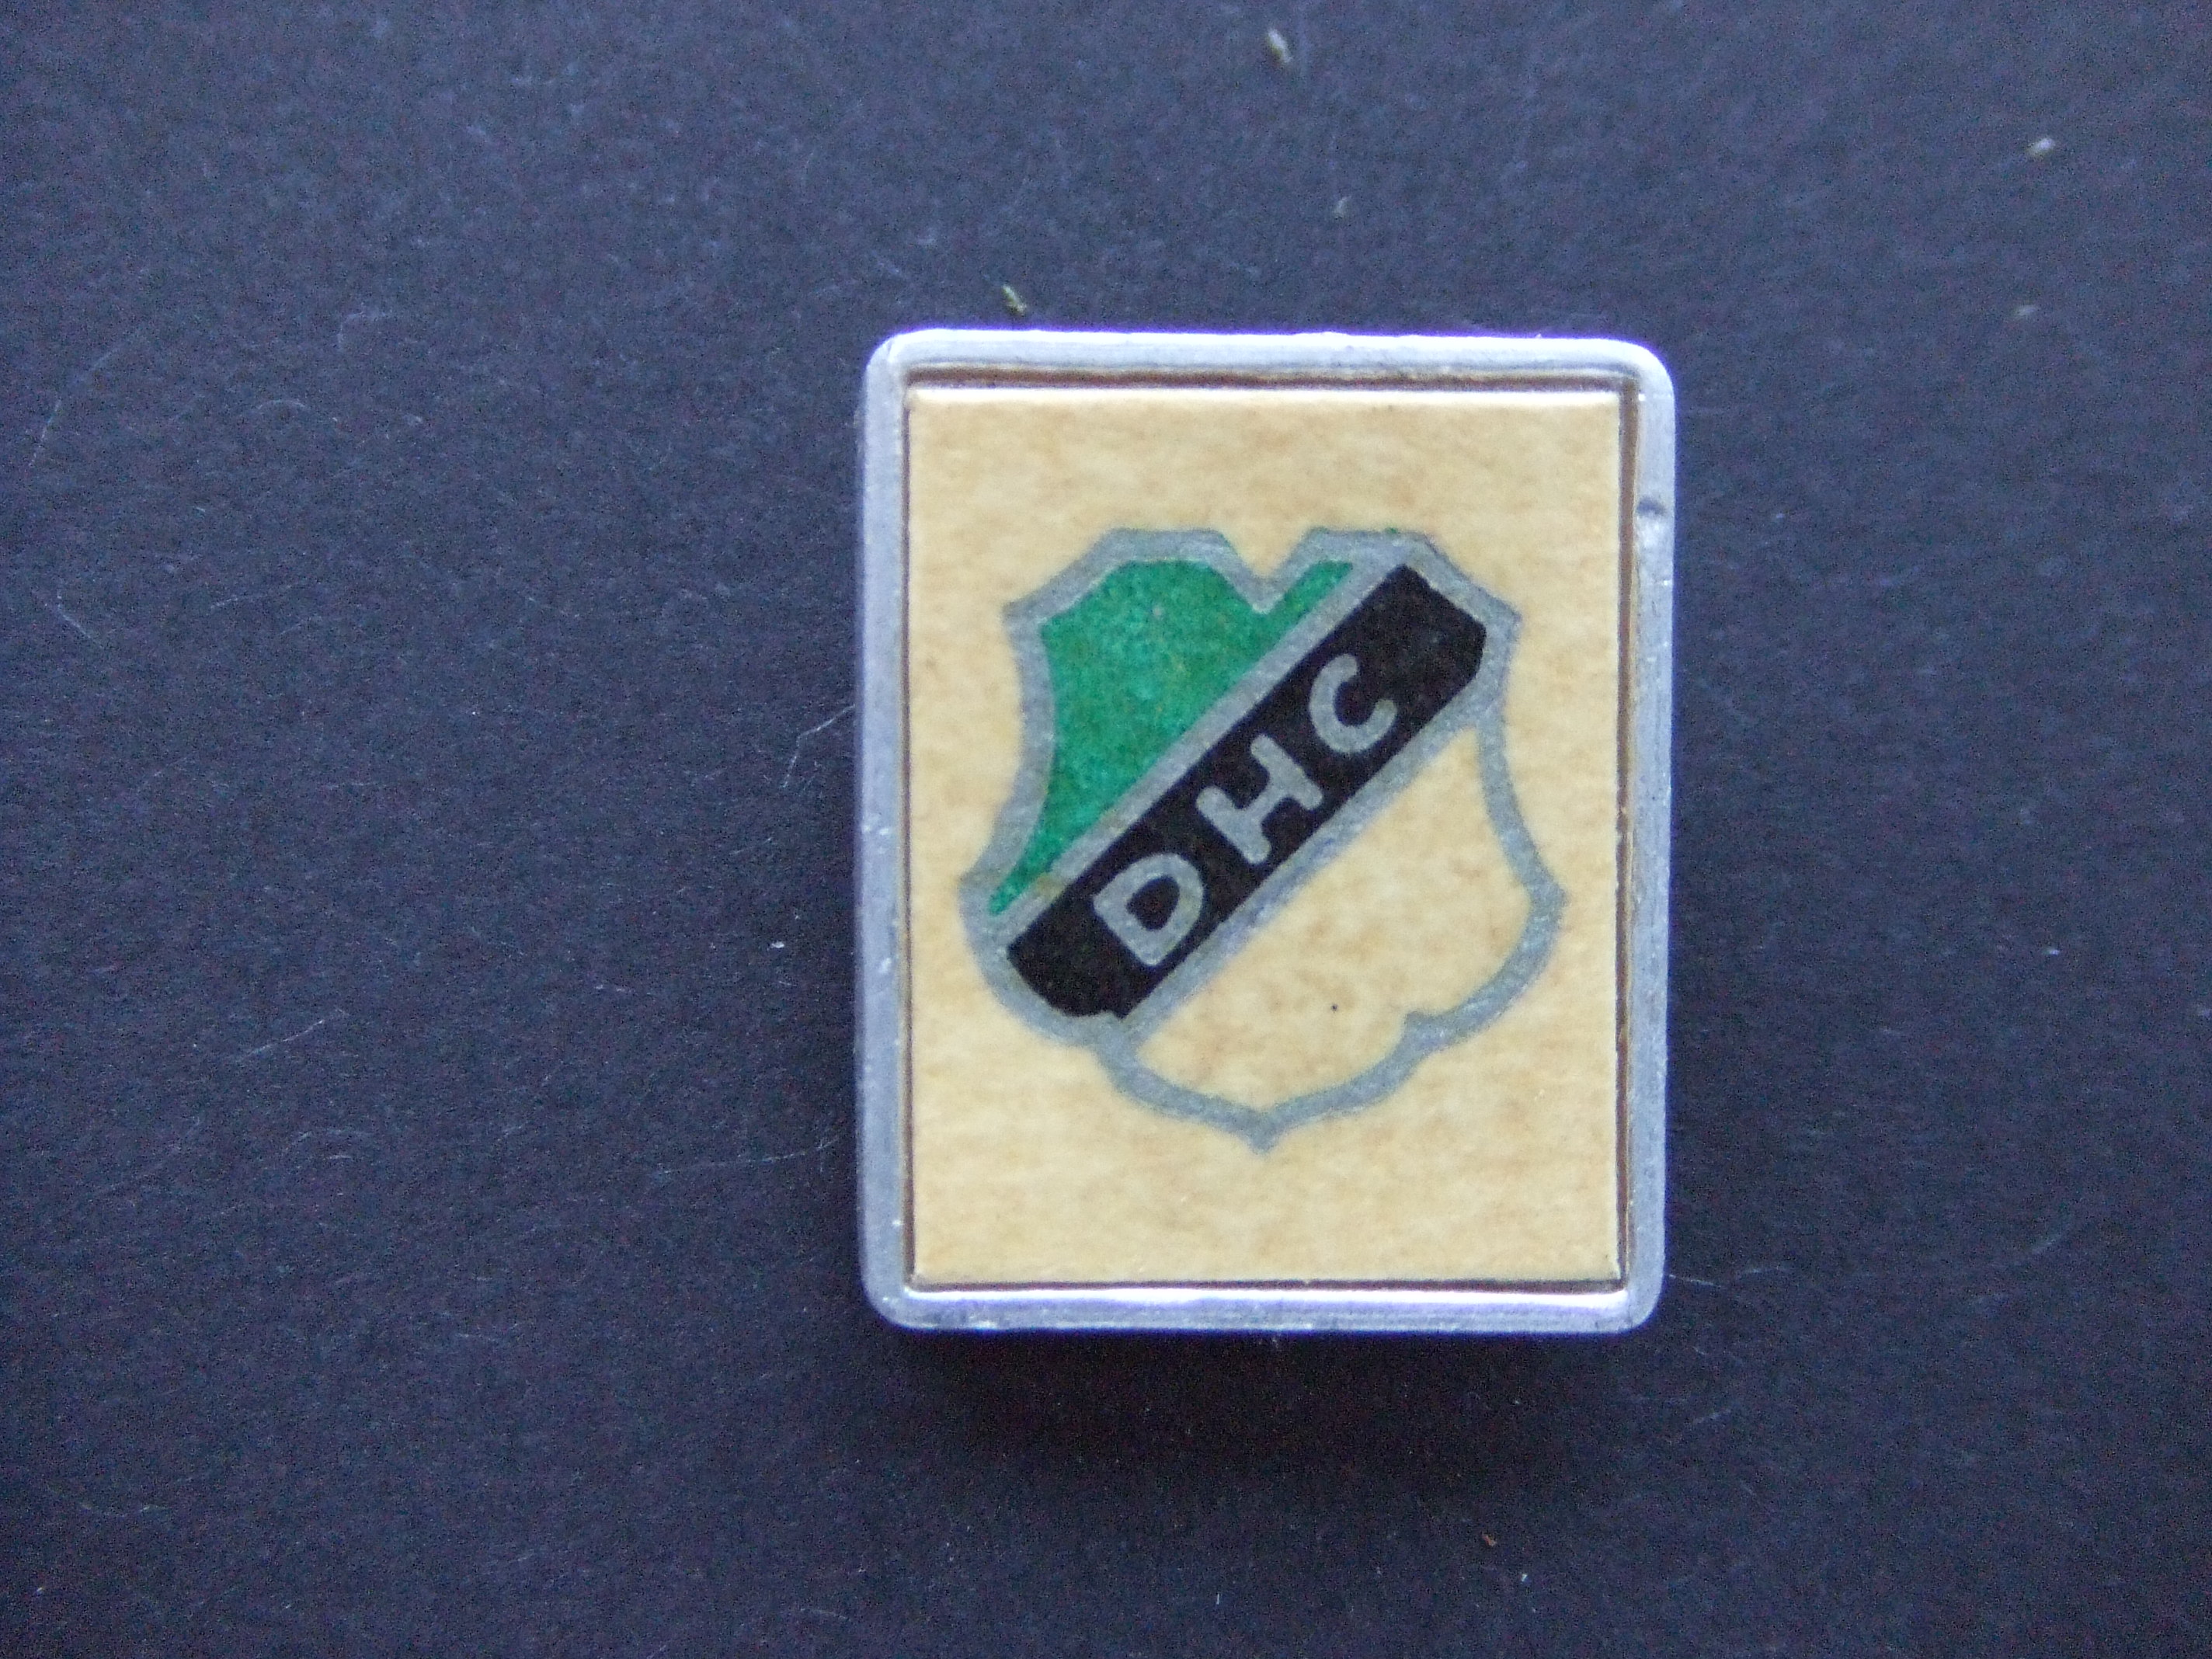 DHC voetbal vereniging Delft oud logo